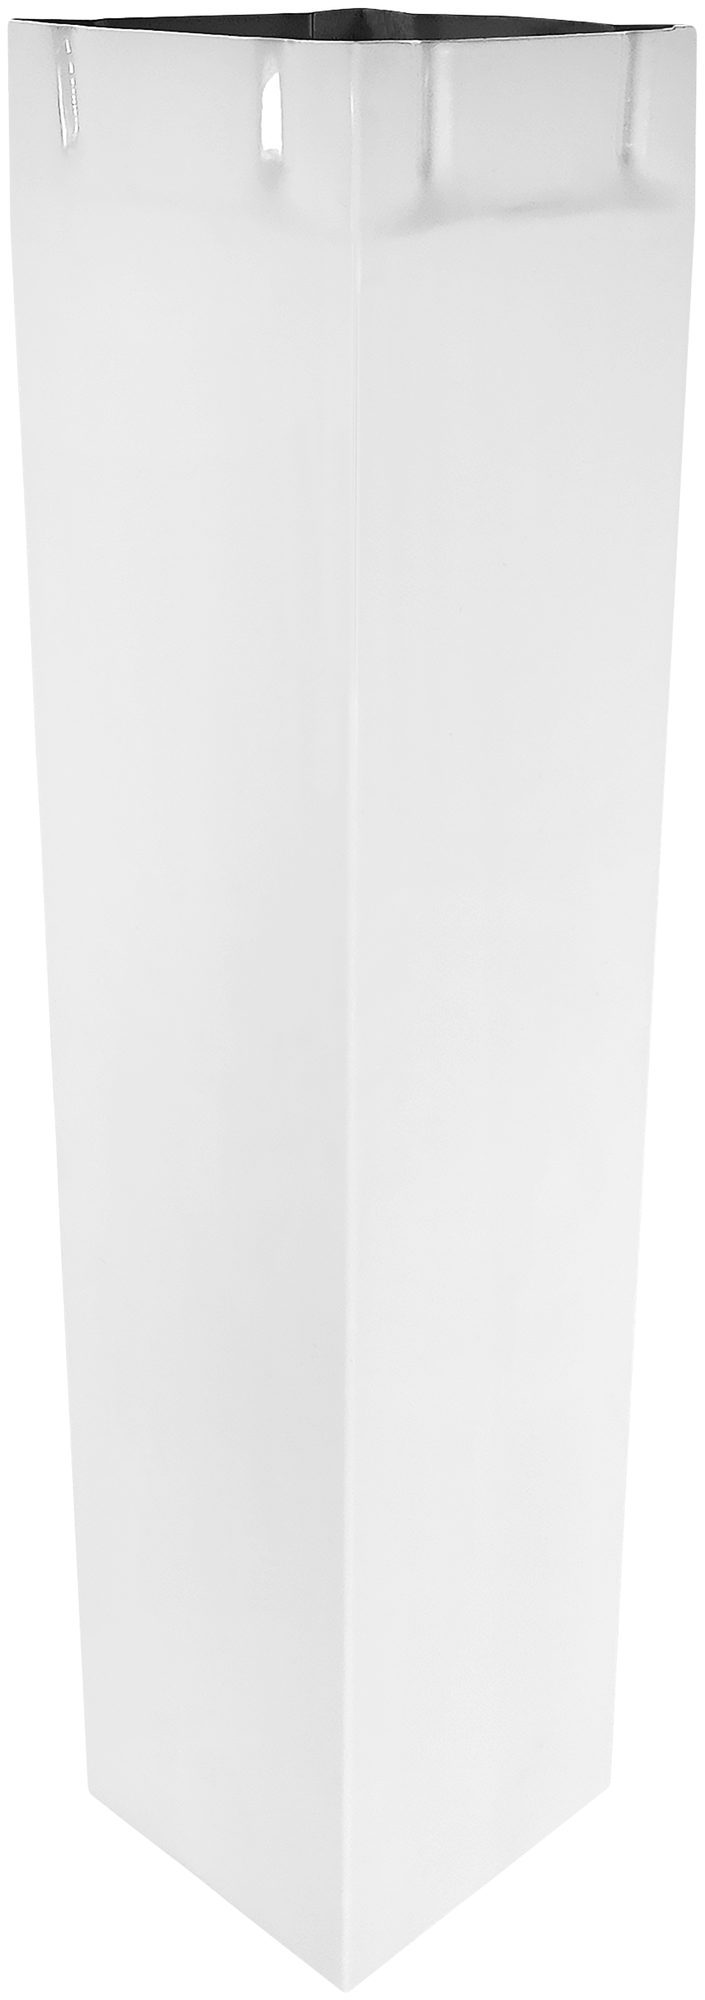 Воздуховод для вытяжки квадратный 90х90 мм, для кухонной вытяжки Кварц ВК-1-35М-2, белый